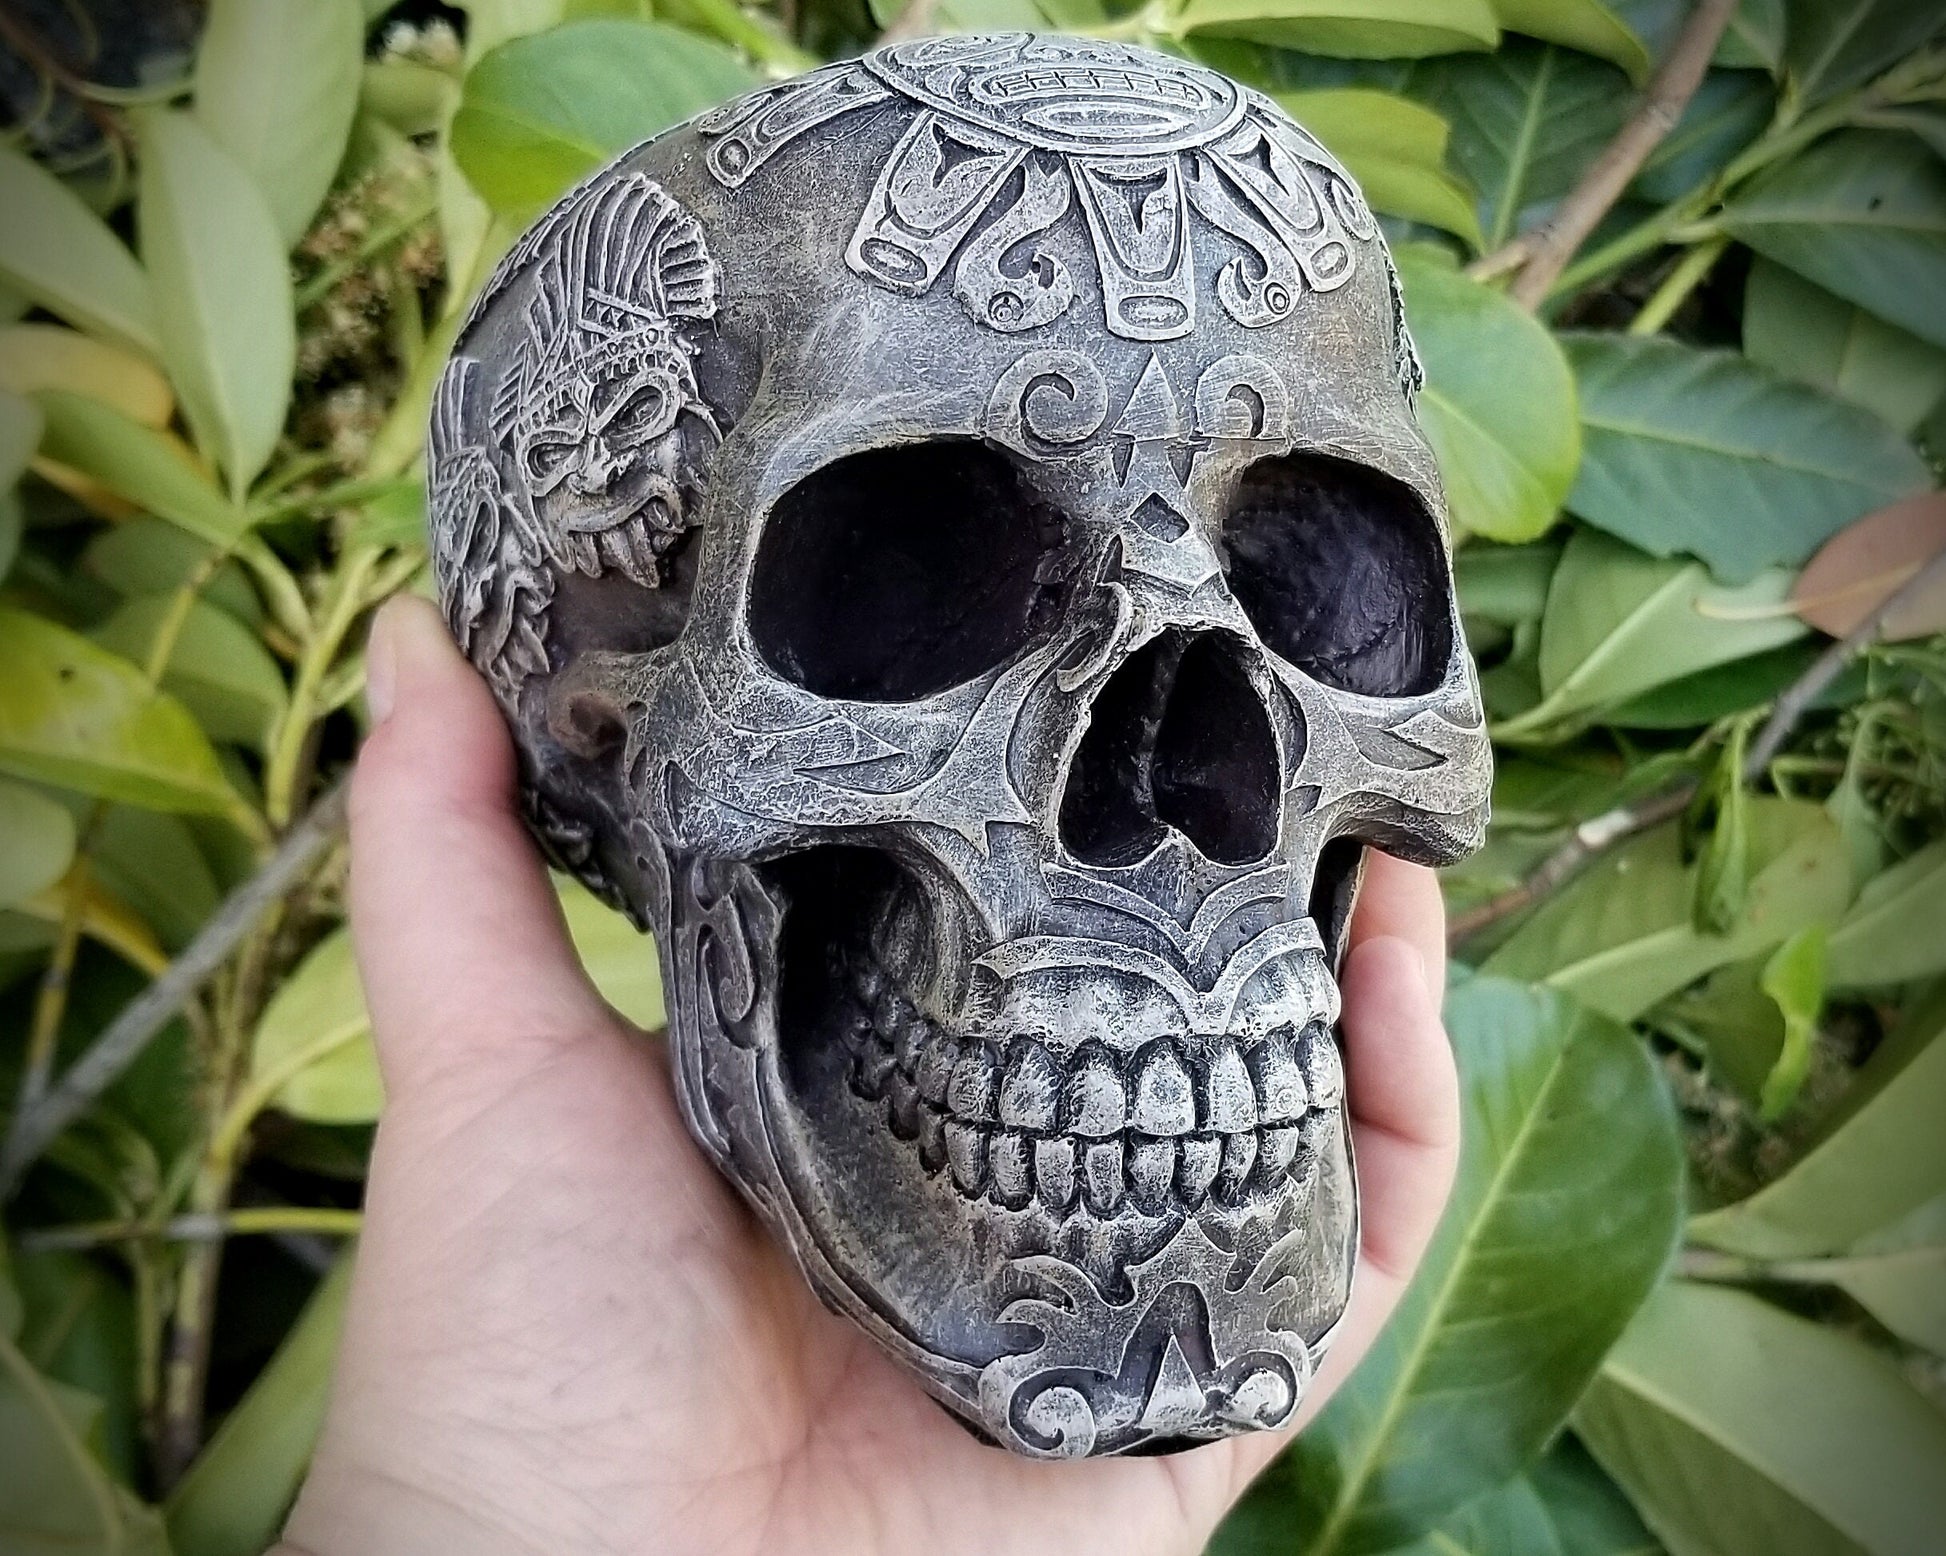 Aztec Decor Skull | Carved Human Skull Statue